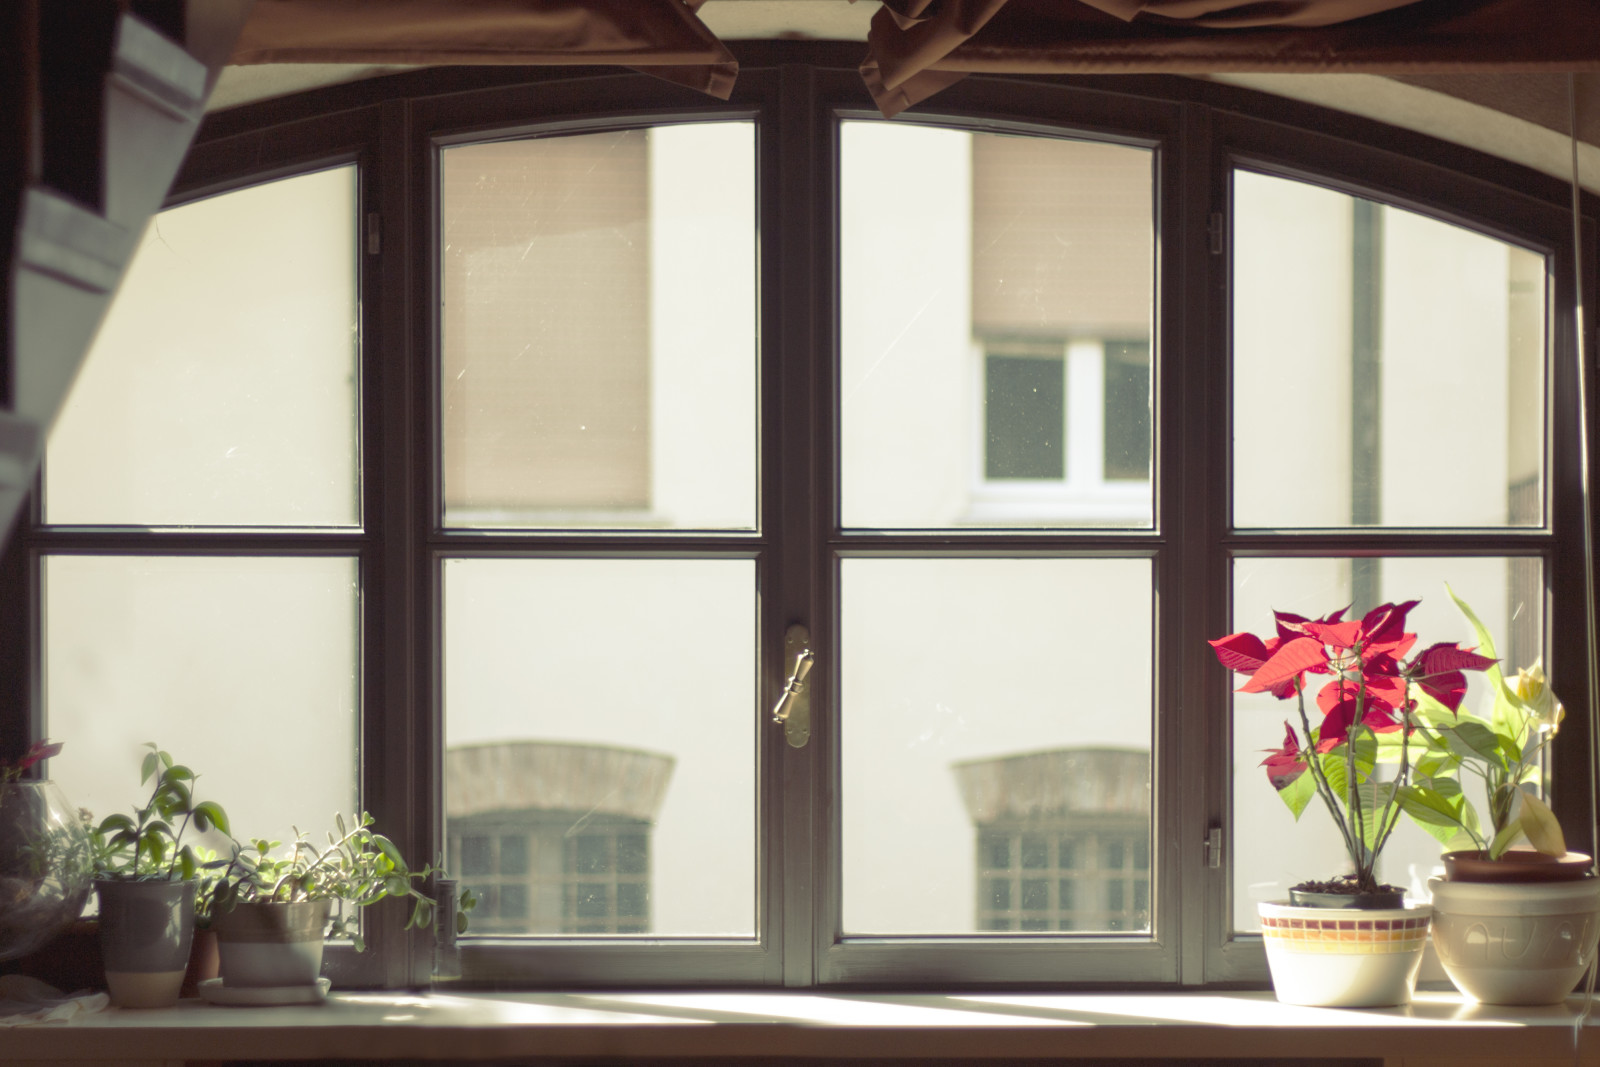 กระจก, ดอกไม้, หน้าต่าง, หม้อ